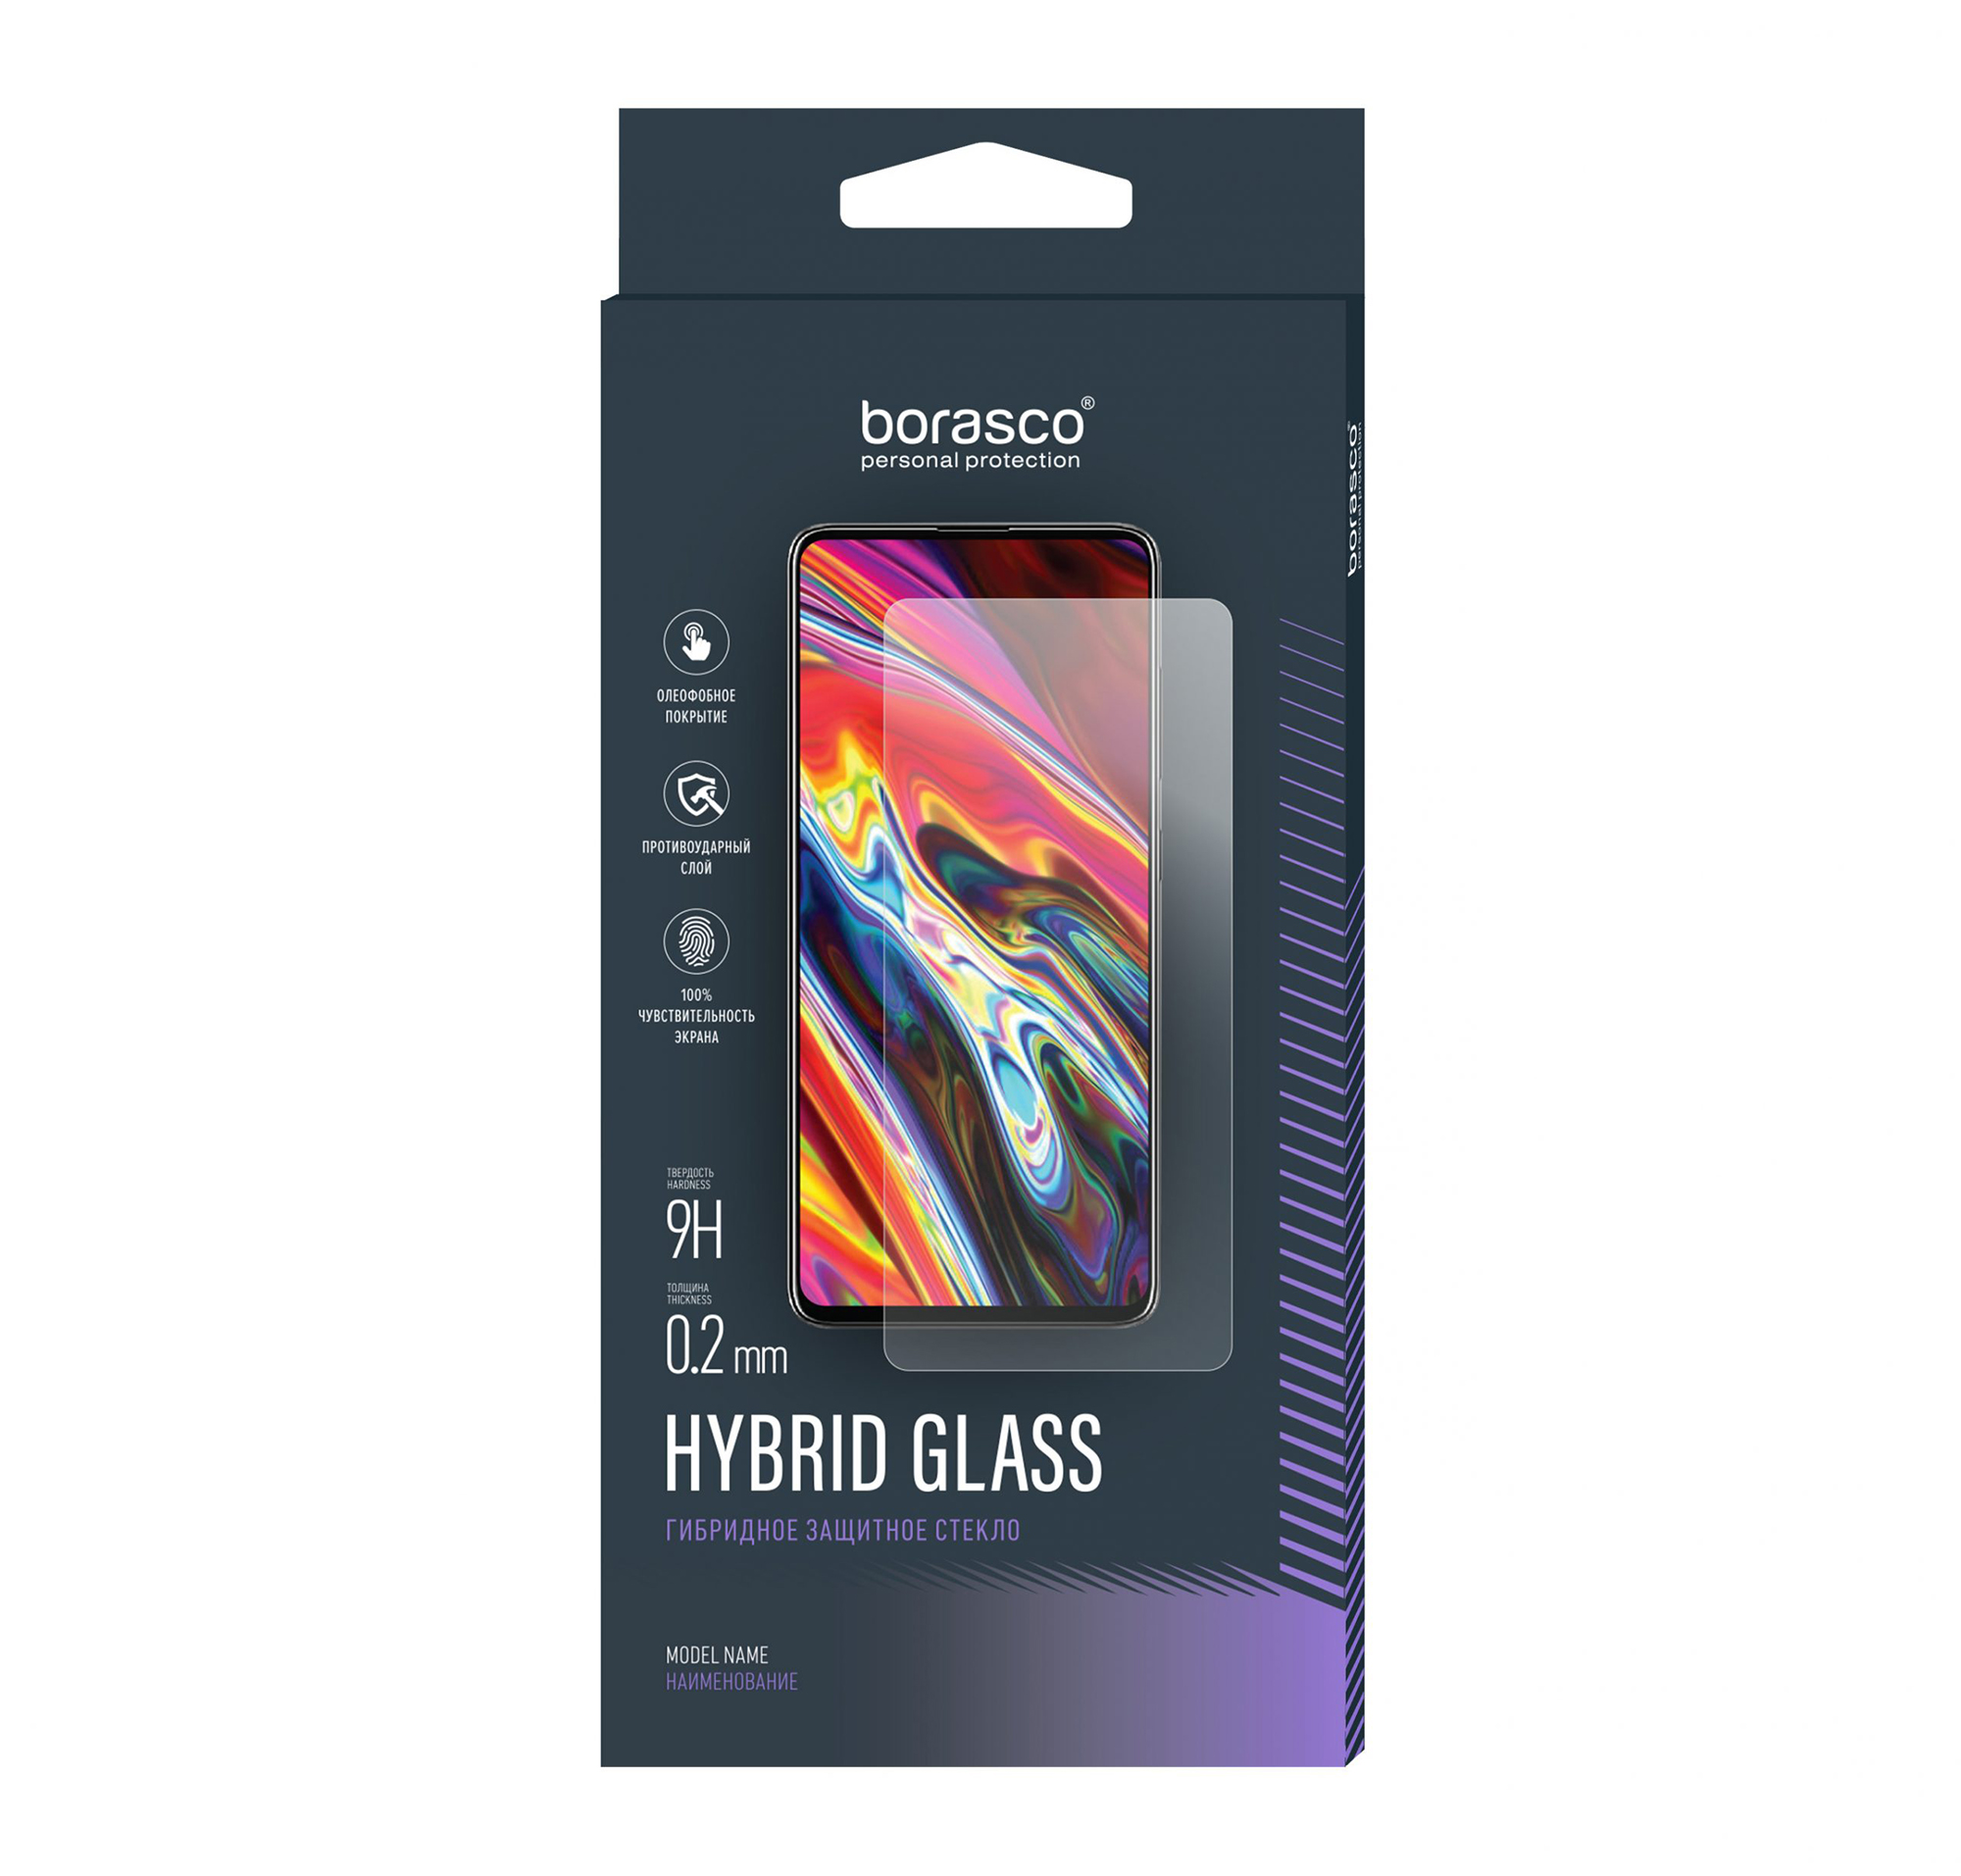 Защитное стекло Hybrid Glass для Vivo X21 защитное стекло для vivo v20 и vivo v20se стекло на виво в20 и виво в20се в комплекте 2 стекла